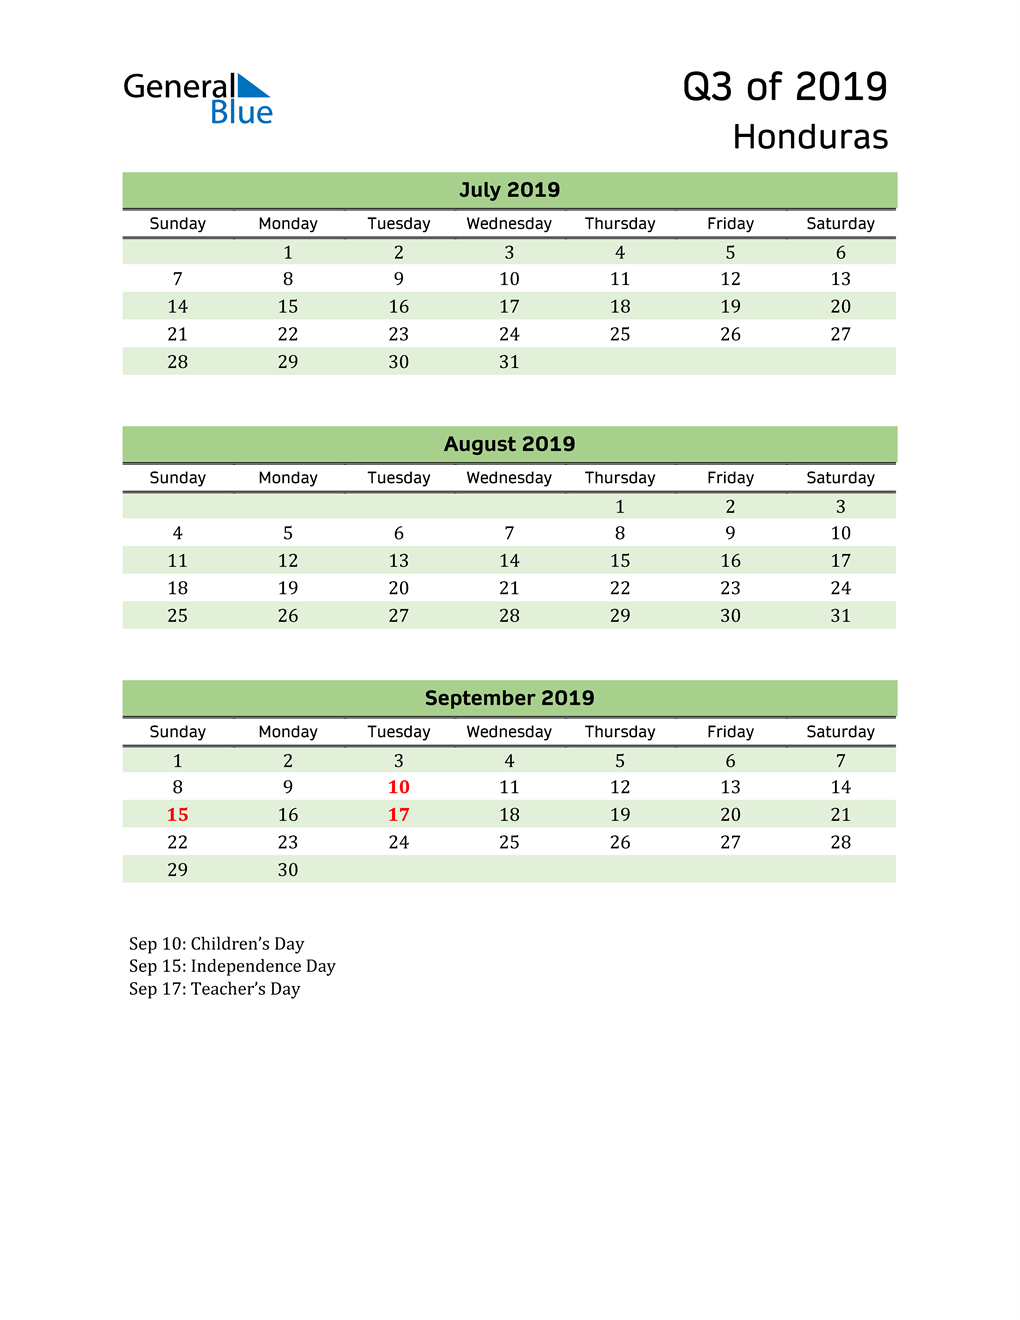  Quarterly Calendar 2019 with Honduras Holidays 